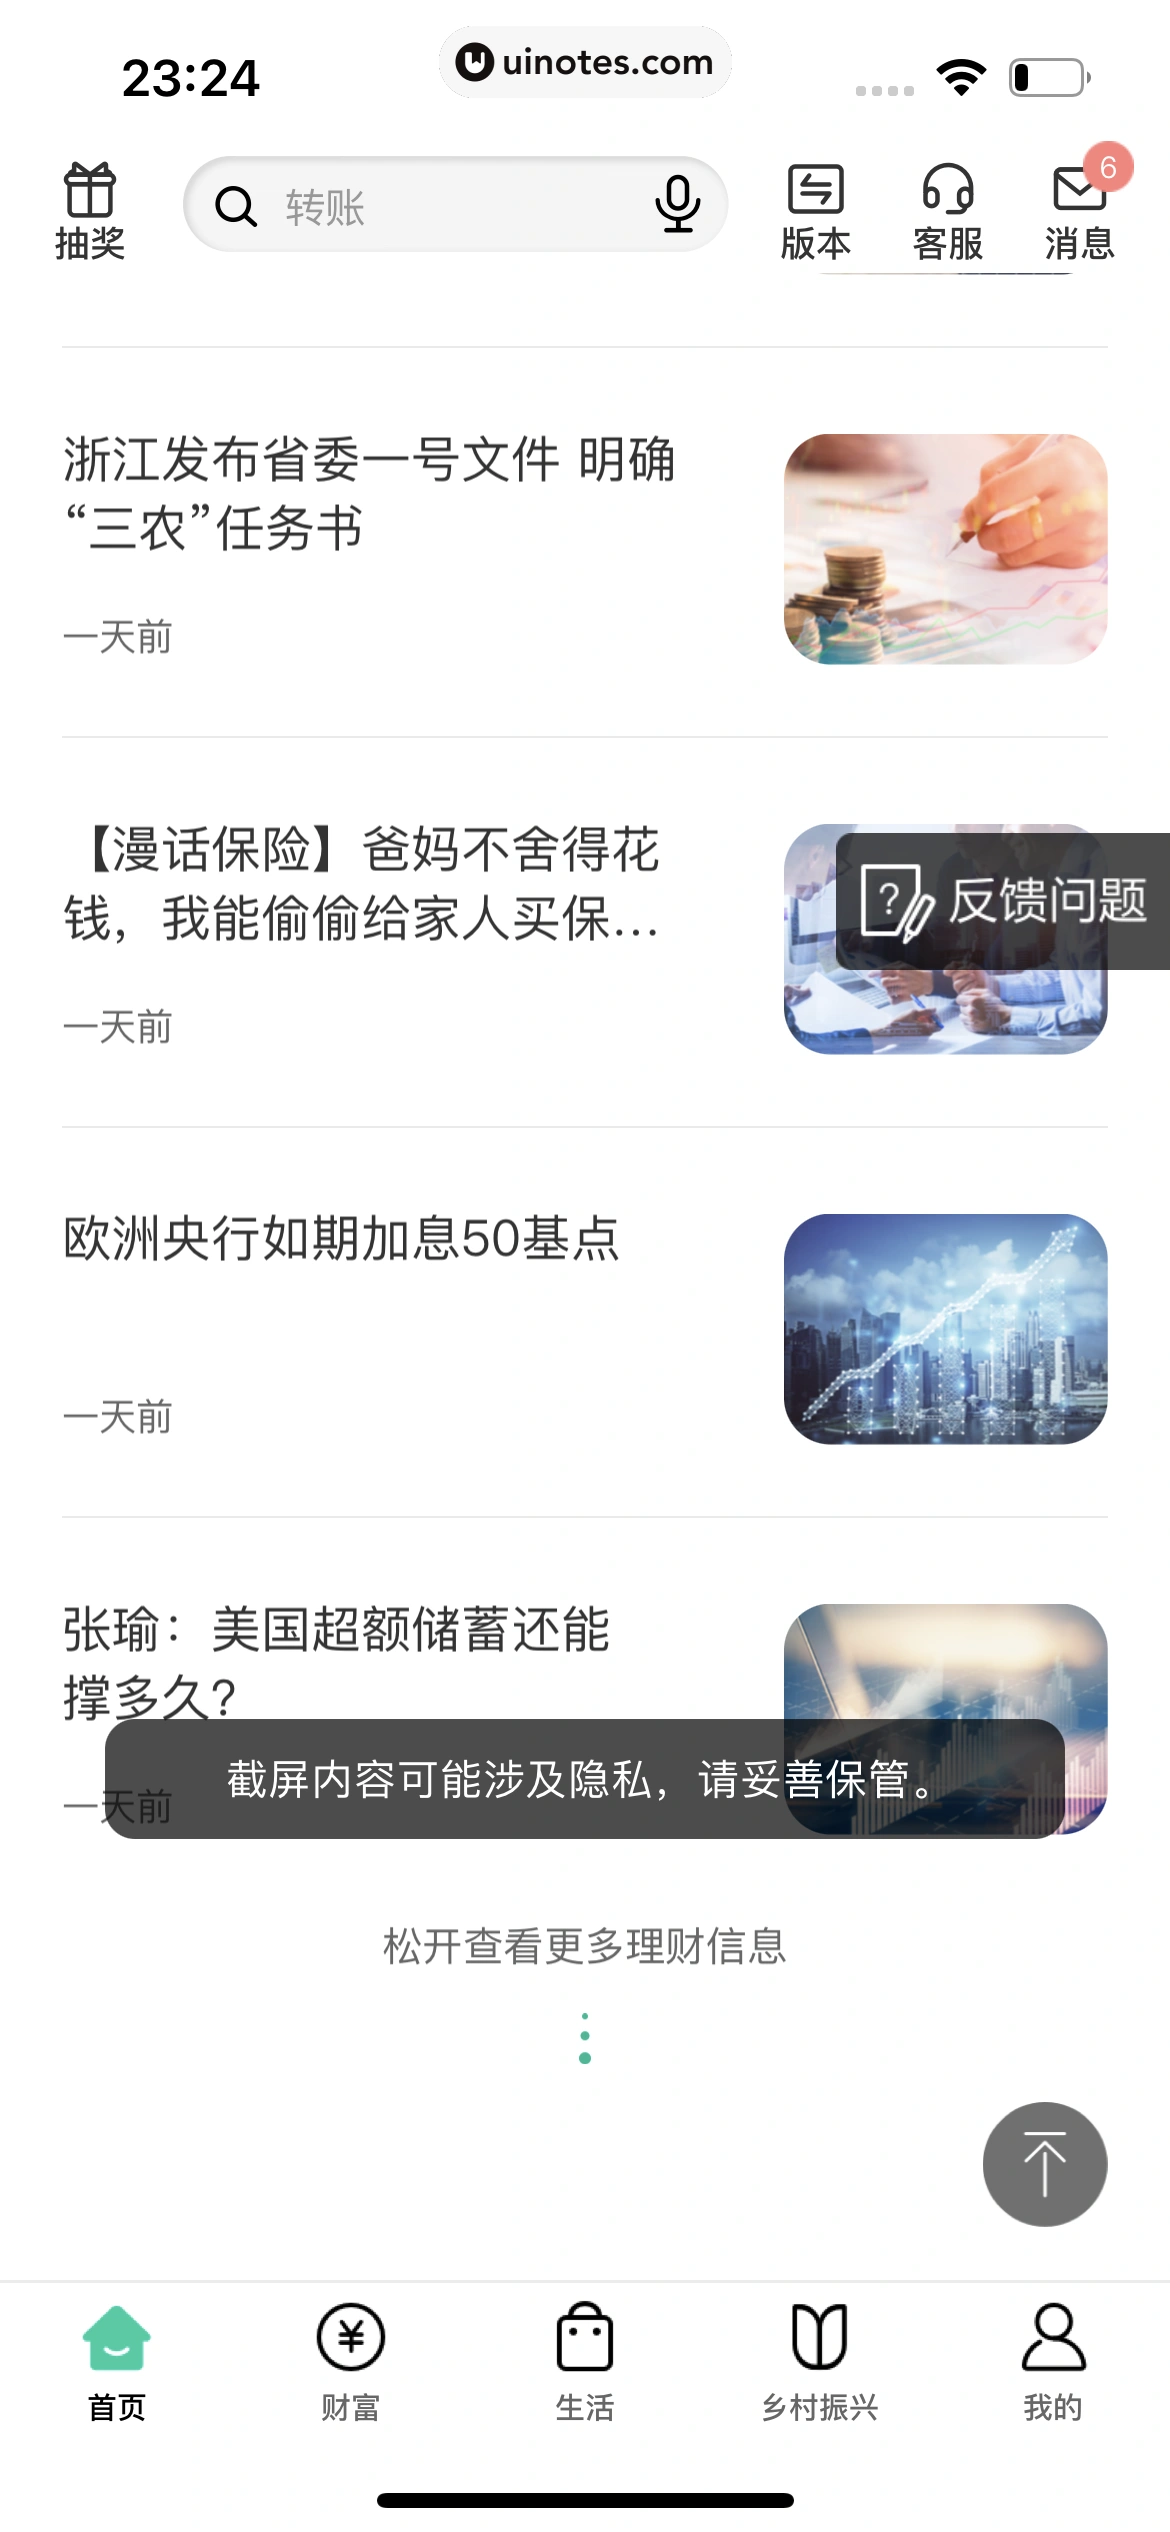 中国农业银行 App 截图 028 - UI Notes